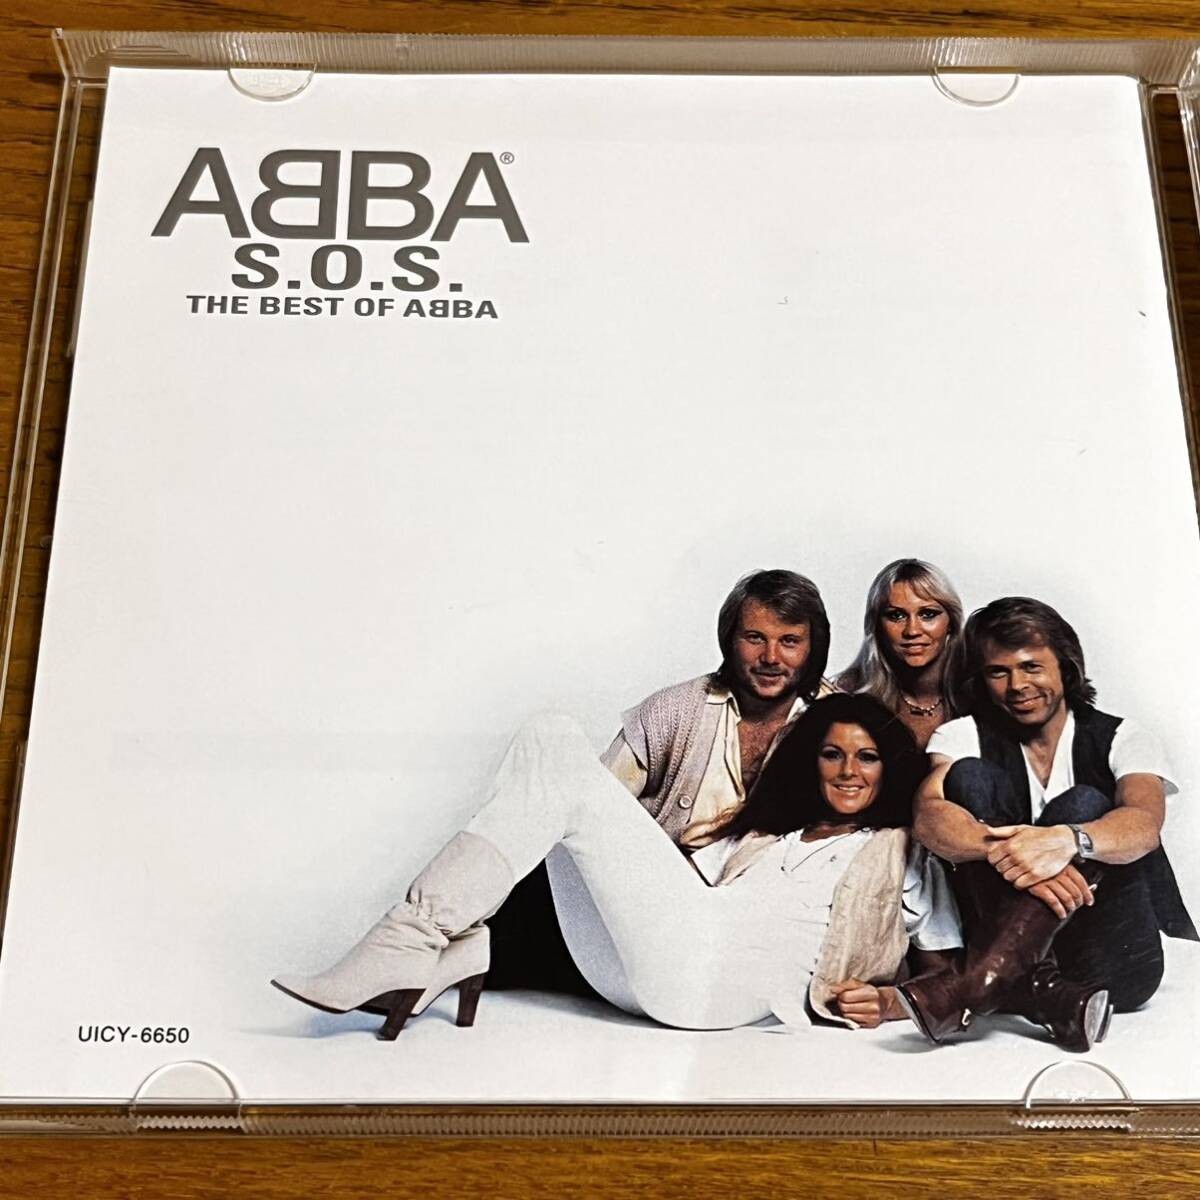 CD アバ ABBA S.O.S THE BEST OF ABBA 日本語解説有り ディスク良好の画像2